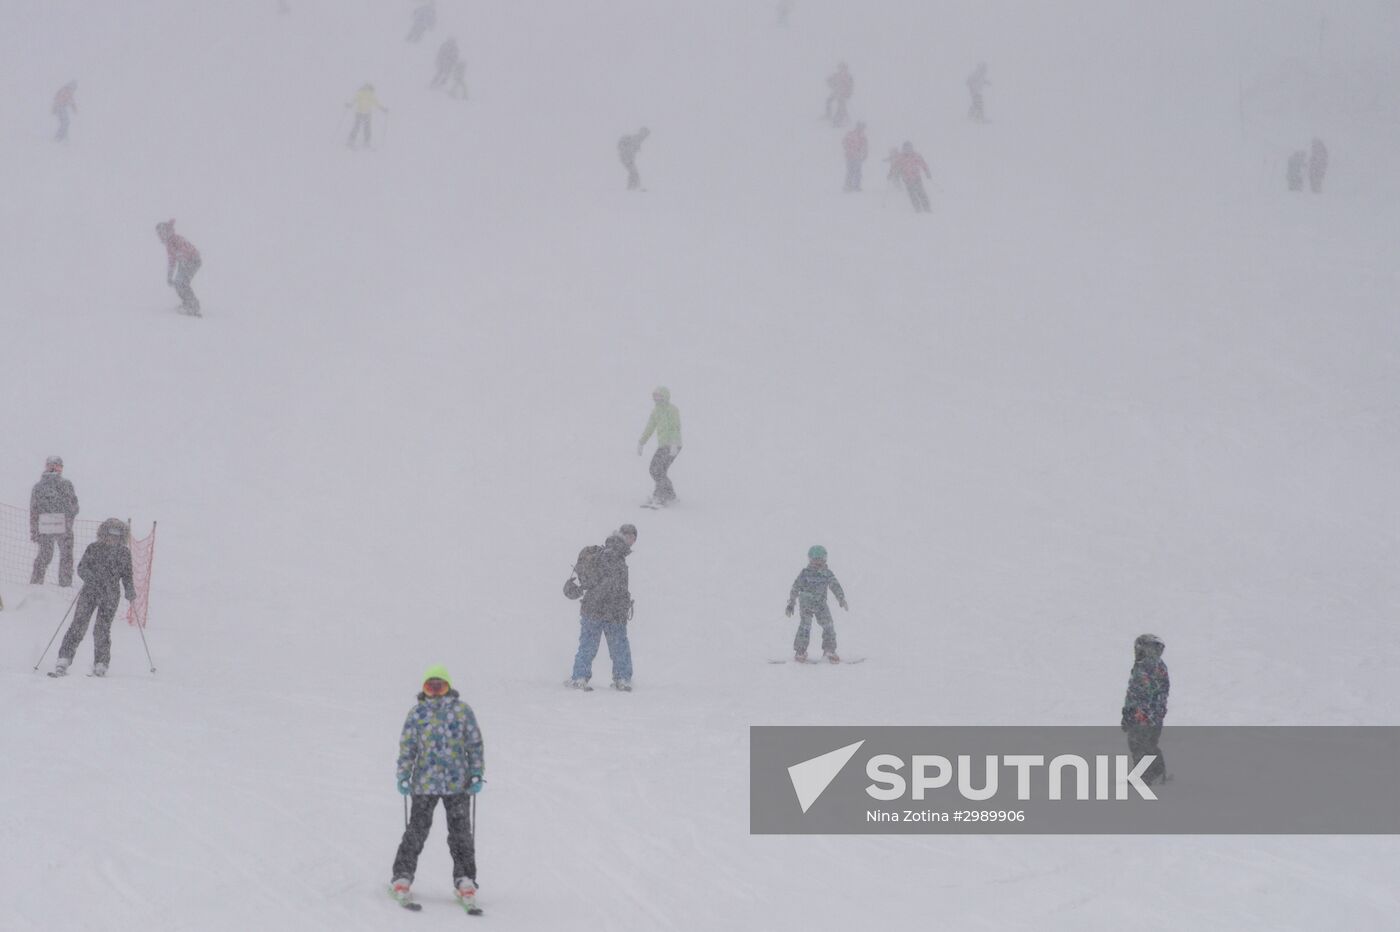 New season begins at Gorky Gorod ski resort in Sochi